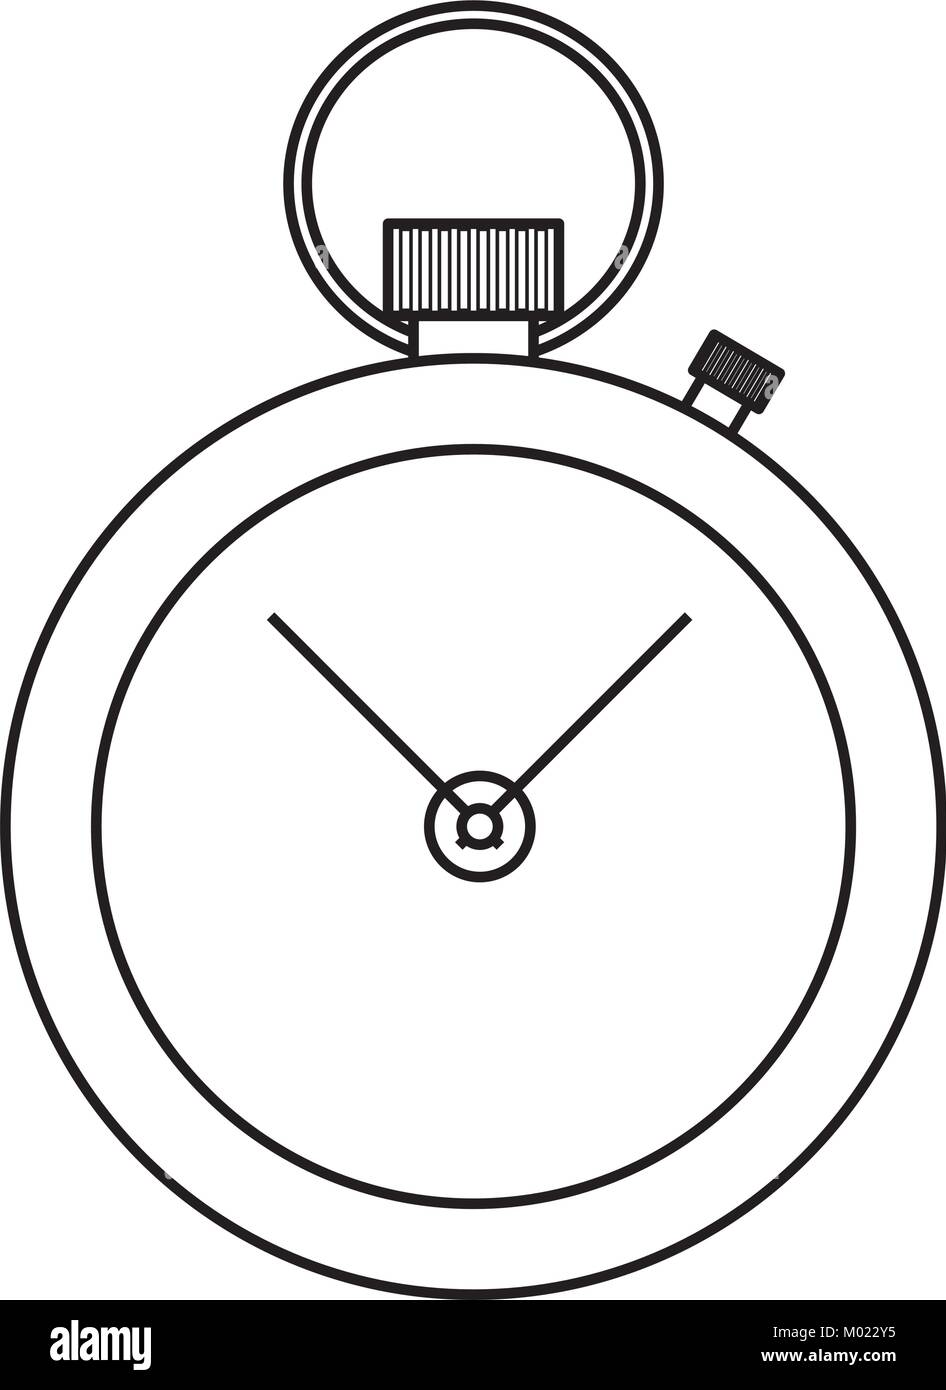 chronometer vector illustration Stock Vector